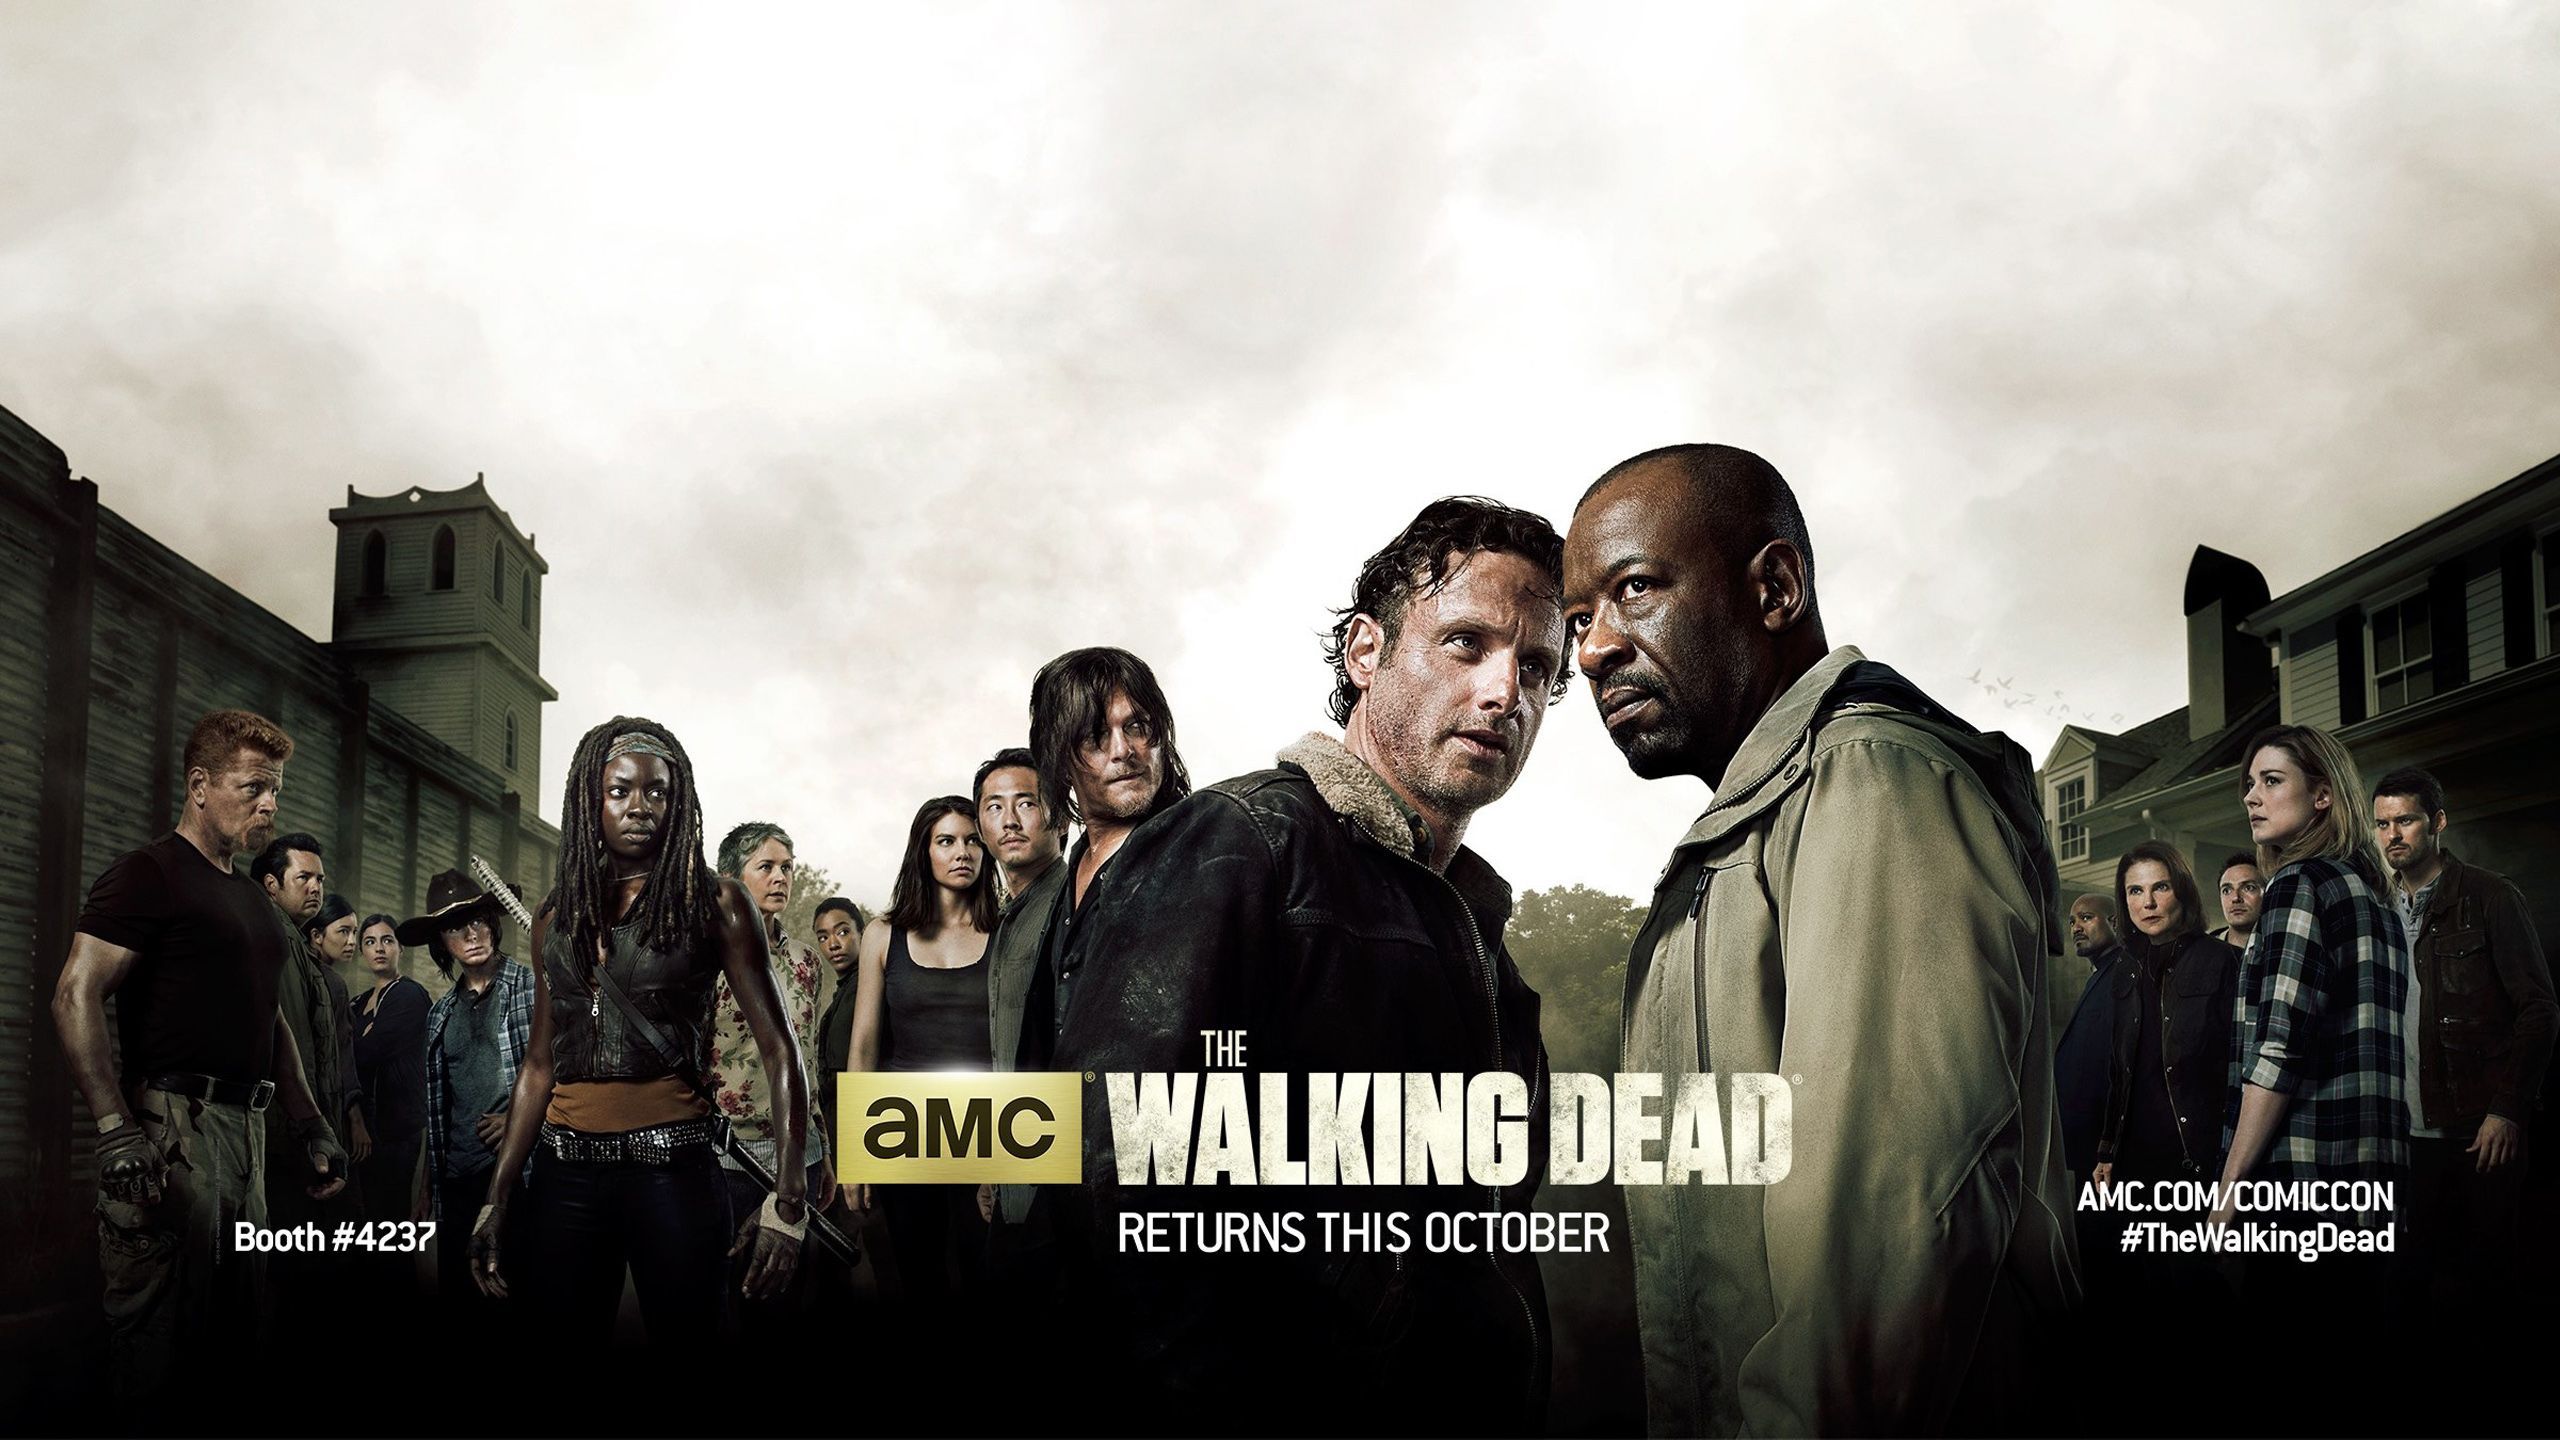 The Walking Dead Season 6 Wallpapers | HD Wallpapers